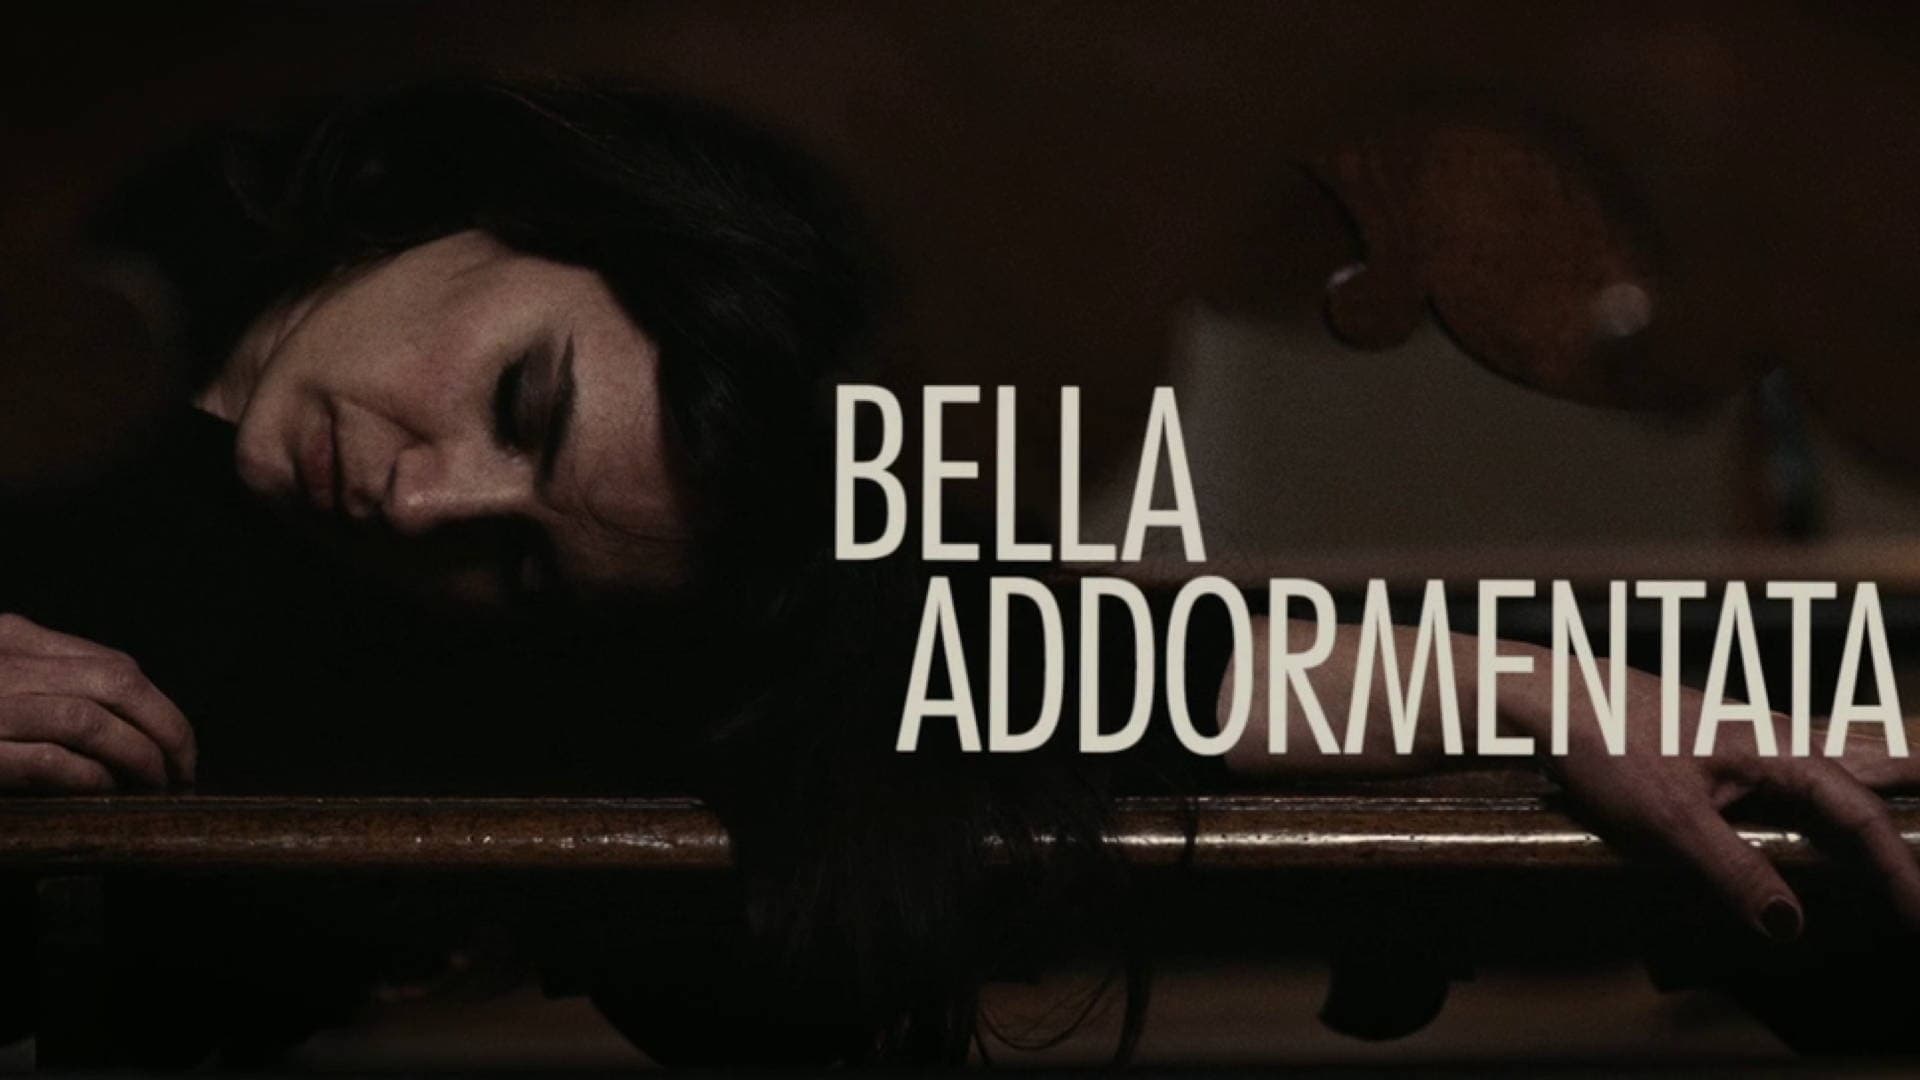 Bella addormentata (2012)